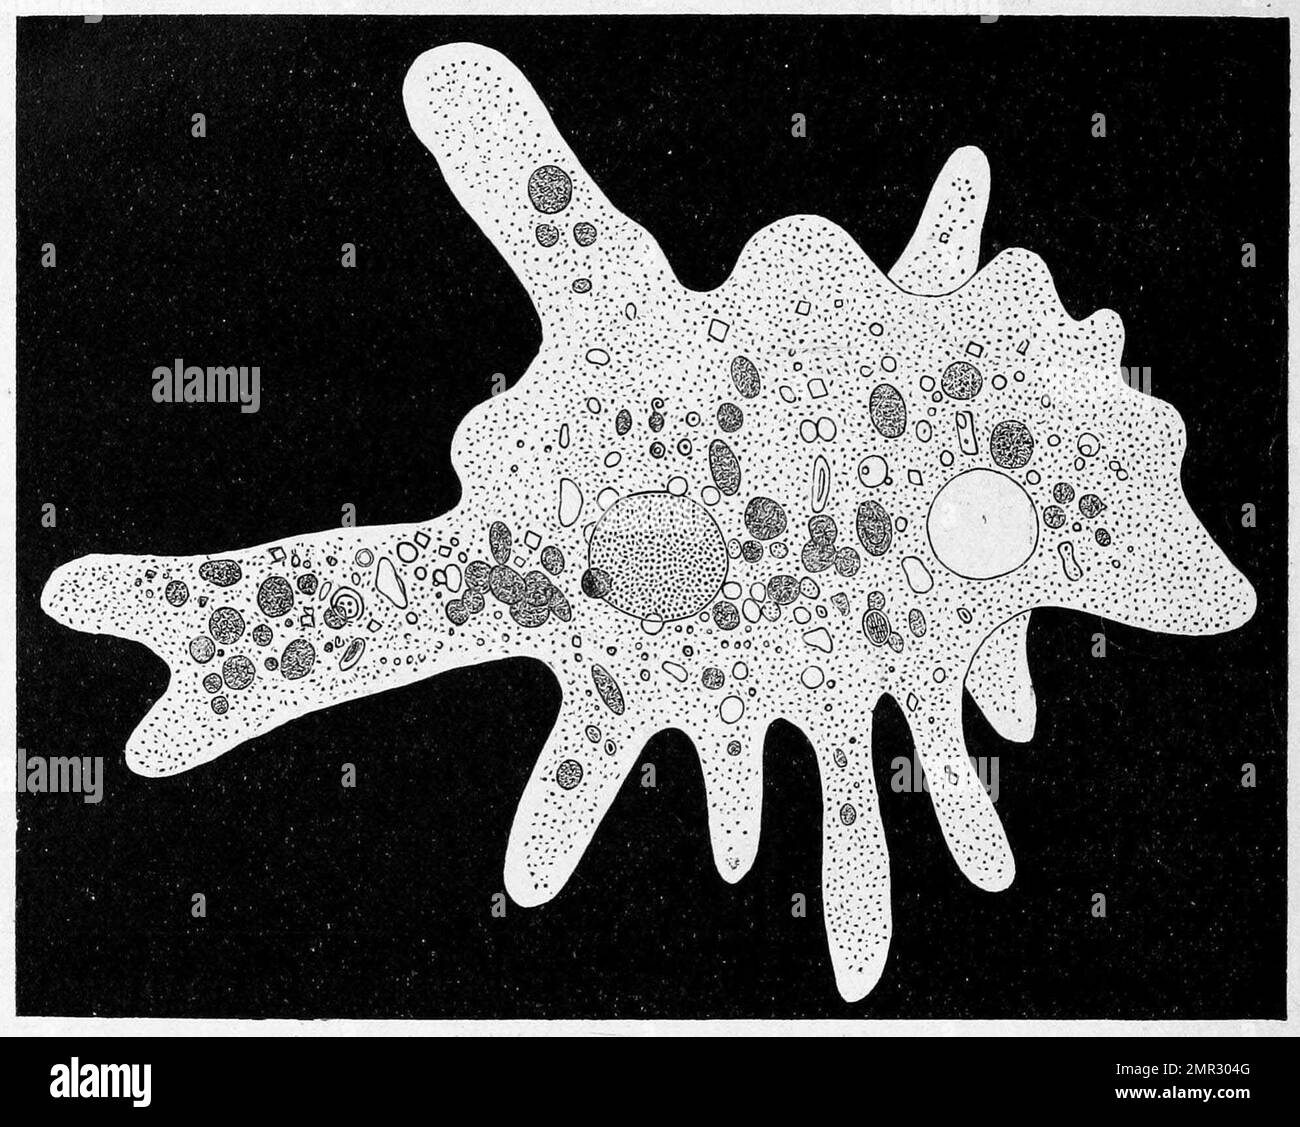 Amoeba proteus, eine große Amöbenart, die eng mit einer anderen Gattung von Riesenamöben, Chaos, verwandt ist, Historisch, digital restaurierte Reproduktion von einer Vorlage aus dem 19. Jahrhundert Stock Photo